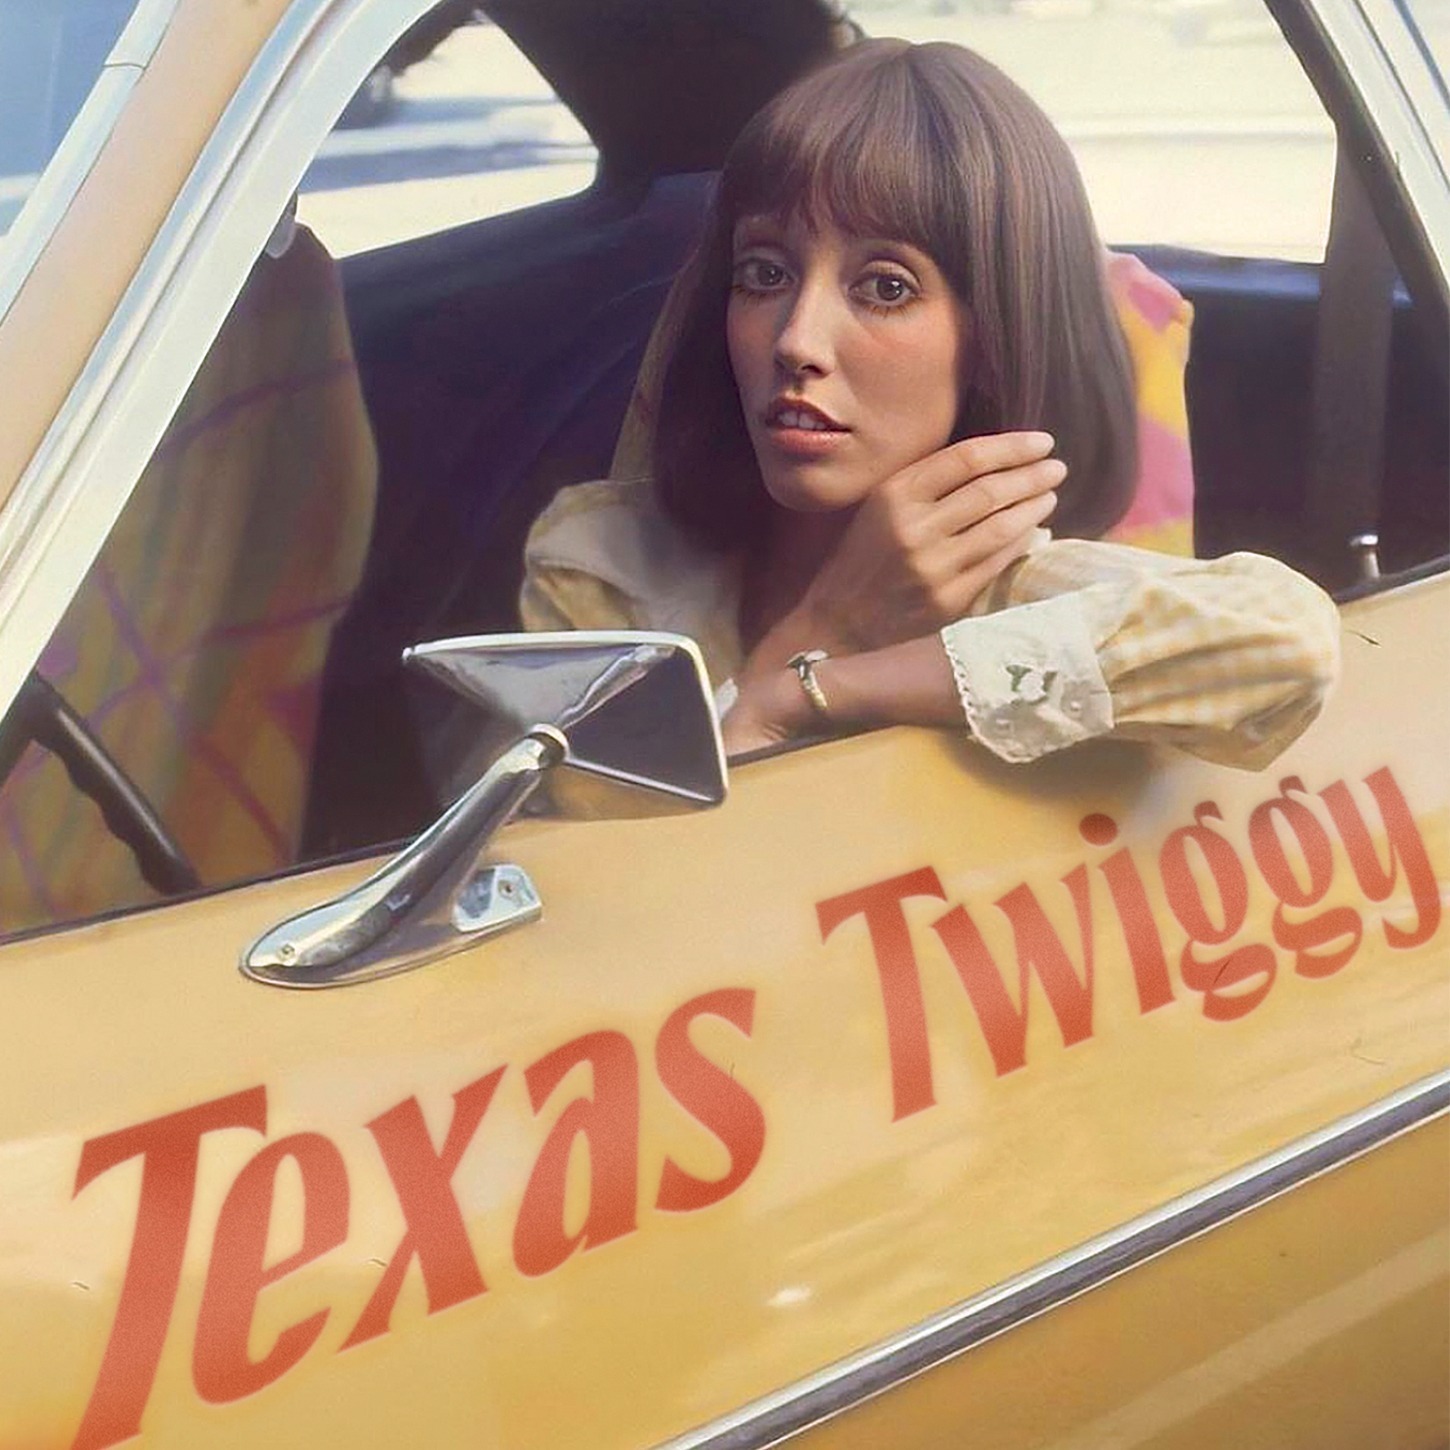 Texas Twiggy podcast show image